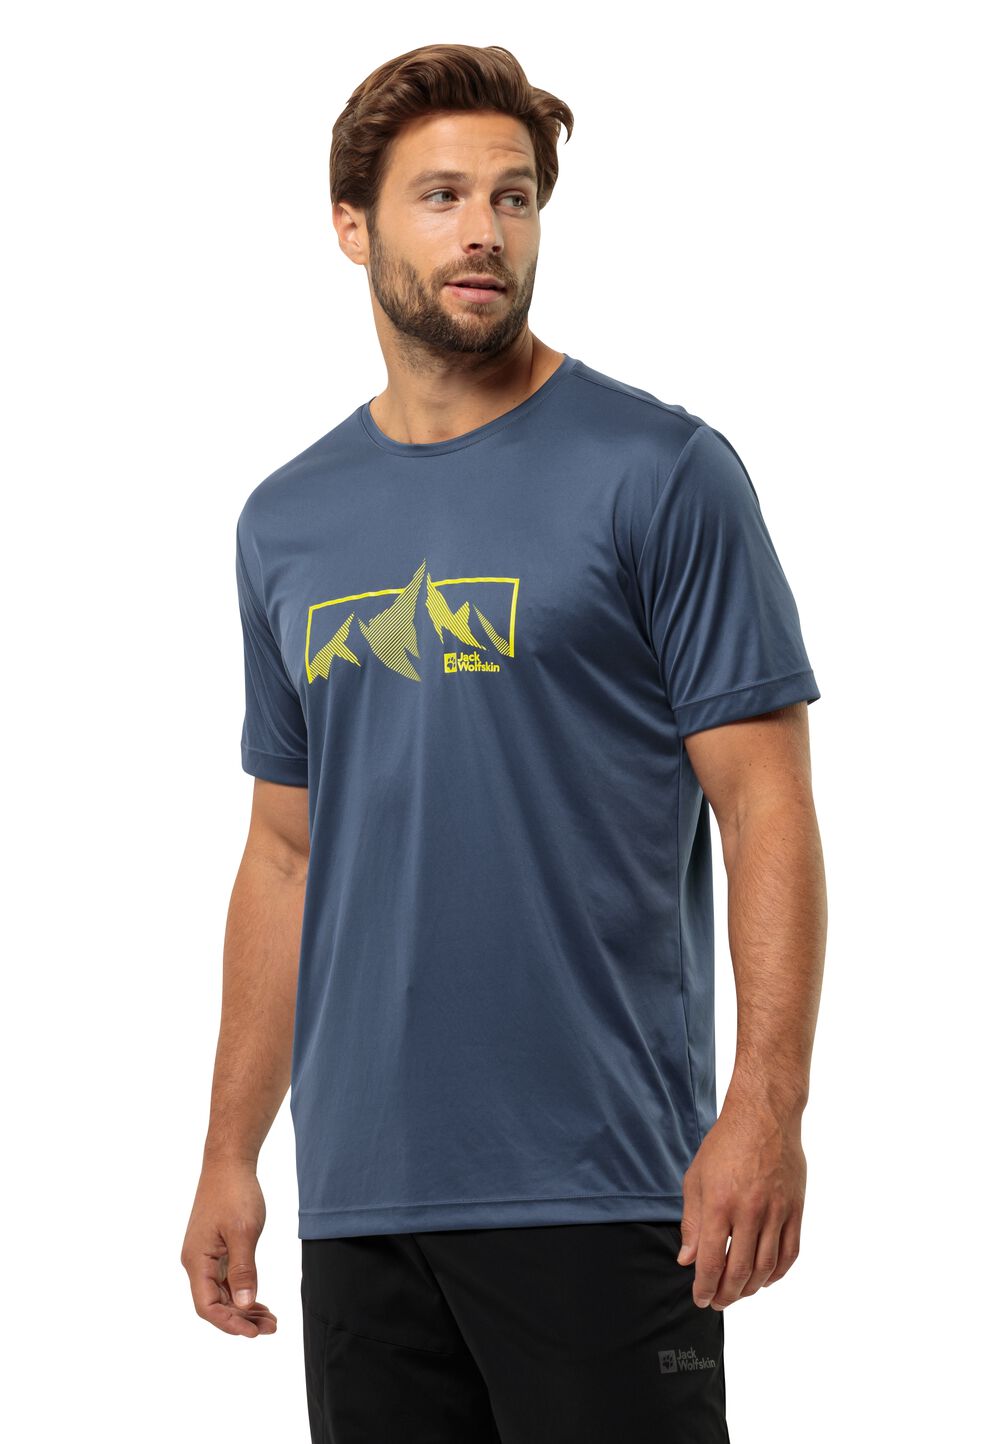 Jack Wolfskin Peak Graphic T-Shirt Men Functioneel shirt Heren S evening sky evening sky